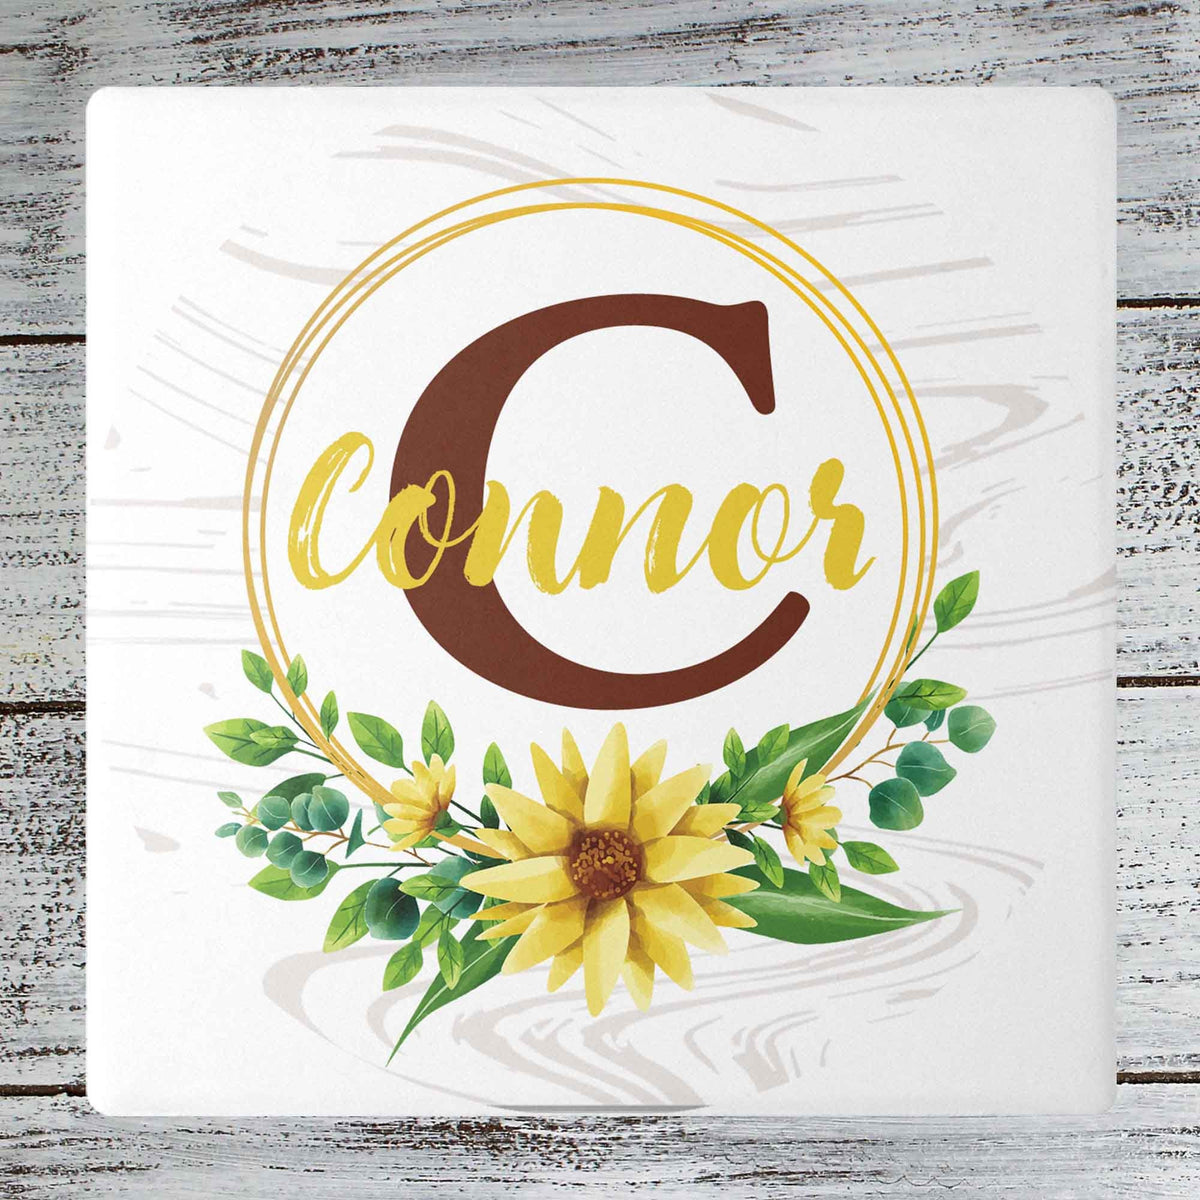 Personalized Coasters | Custom Stone Coaster Set | Sunflower Monogram | Set of 4